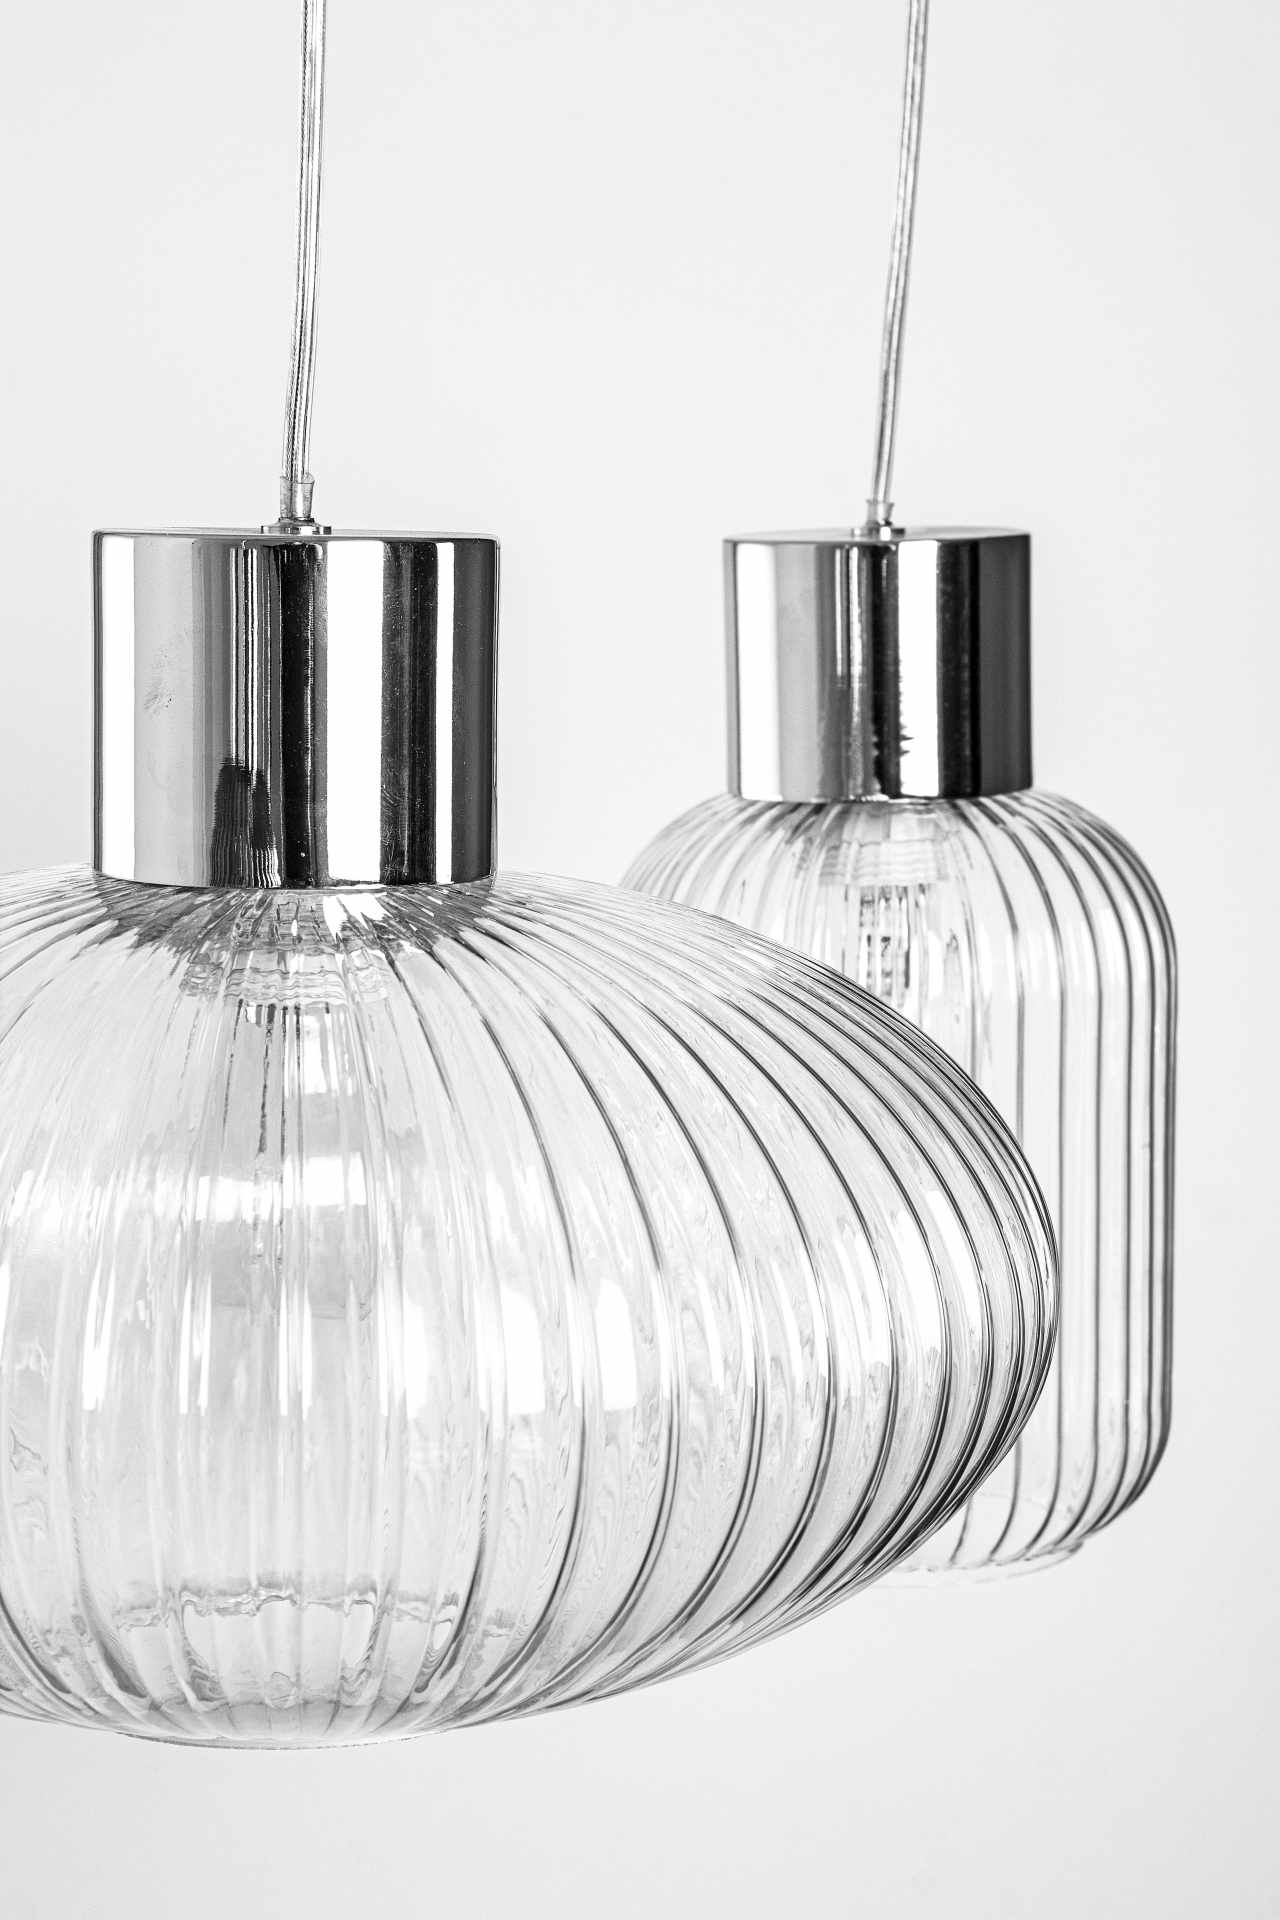 Die Hängeleuchte Showy überzeugt mit ihrem modernen Design. Gefertigt wurde sie aus Metall, welches einen silberne Farbton besitzt. Die Lampenschirme sind aus Glas und sind klar. Die Lampe besitzt eine Höhe von 120 cm.